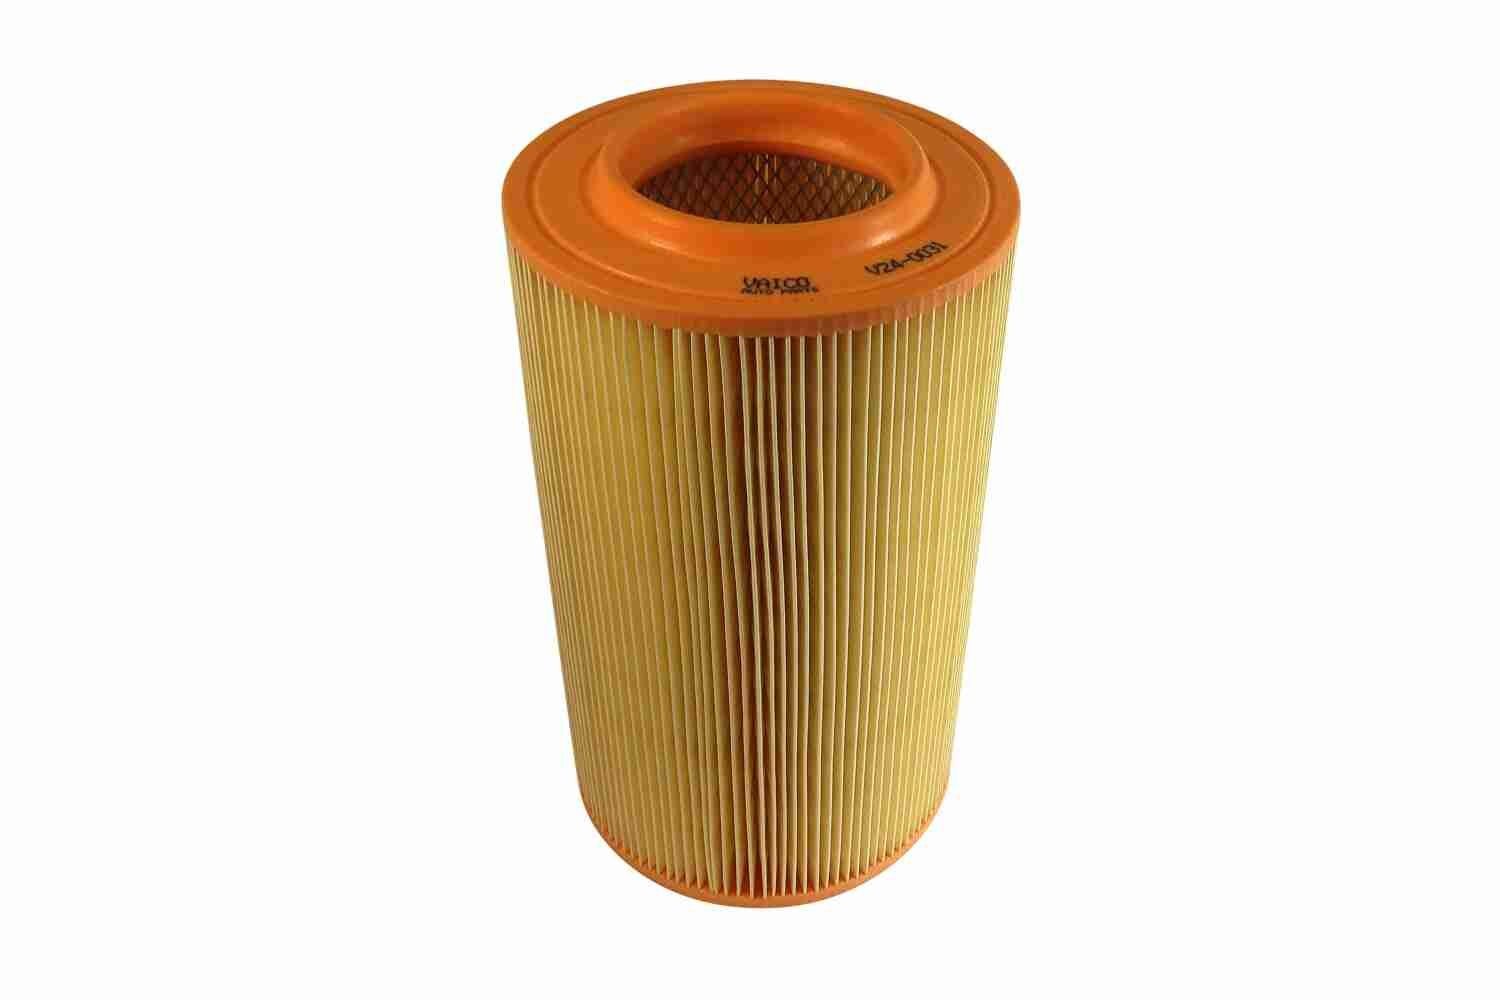 VAICO 303mm, 168,5, 169mm, Filter Insert, Original VAICO Quality Height: 303mm Engine air filter V24-0031 buy